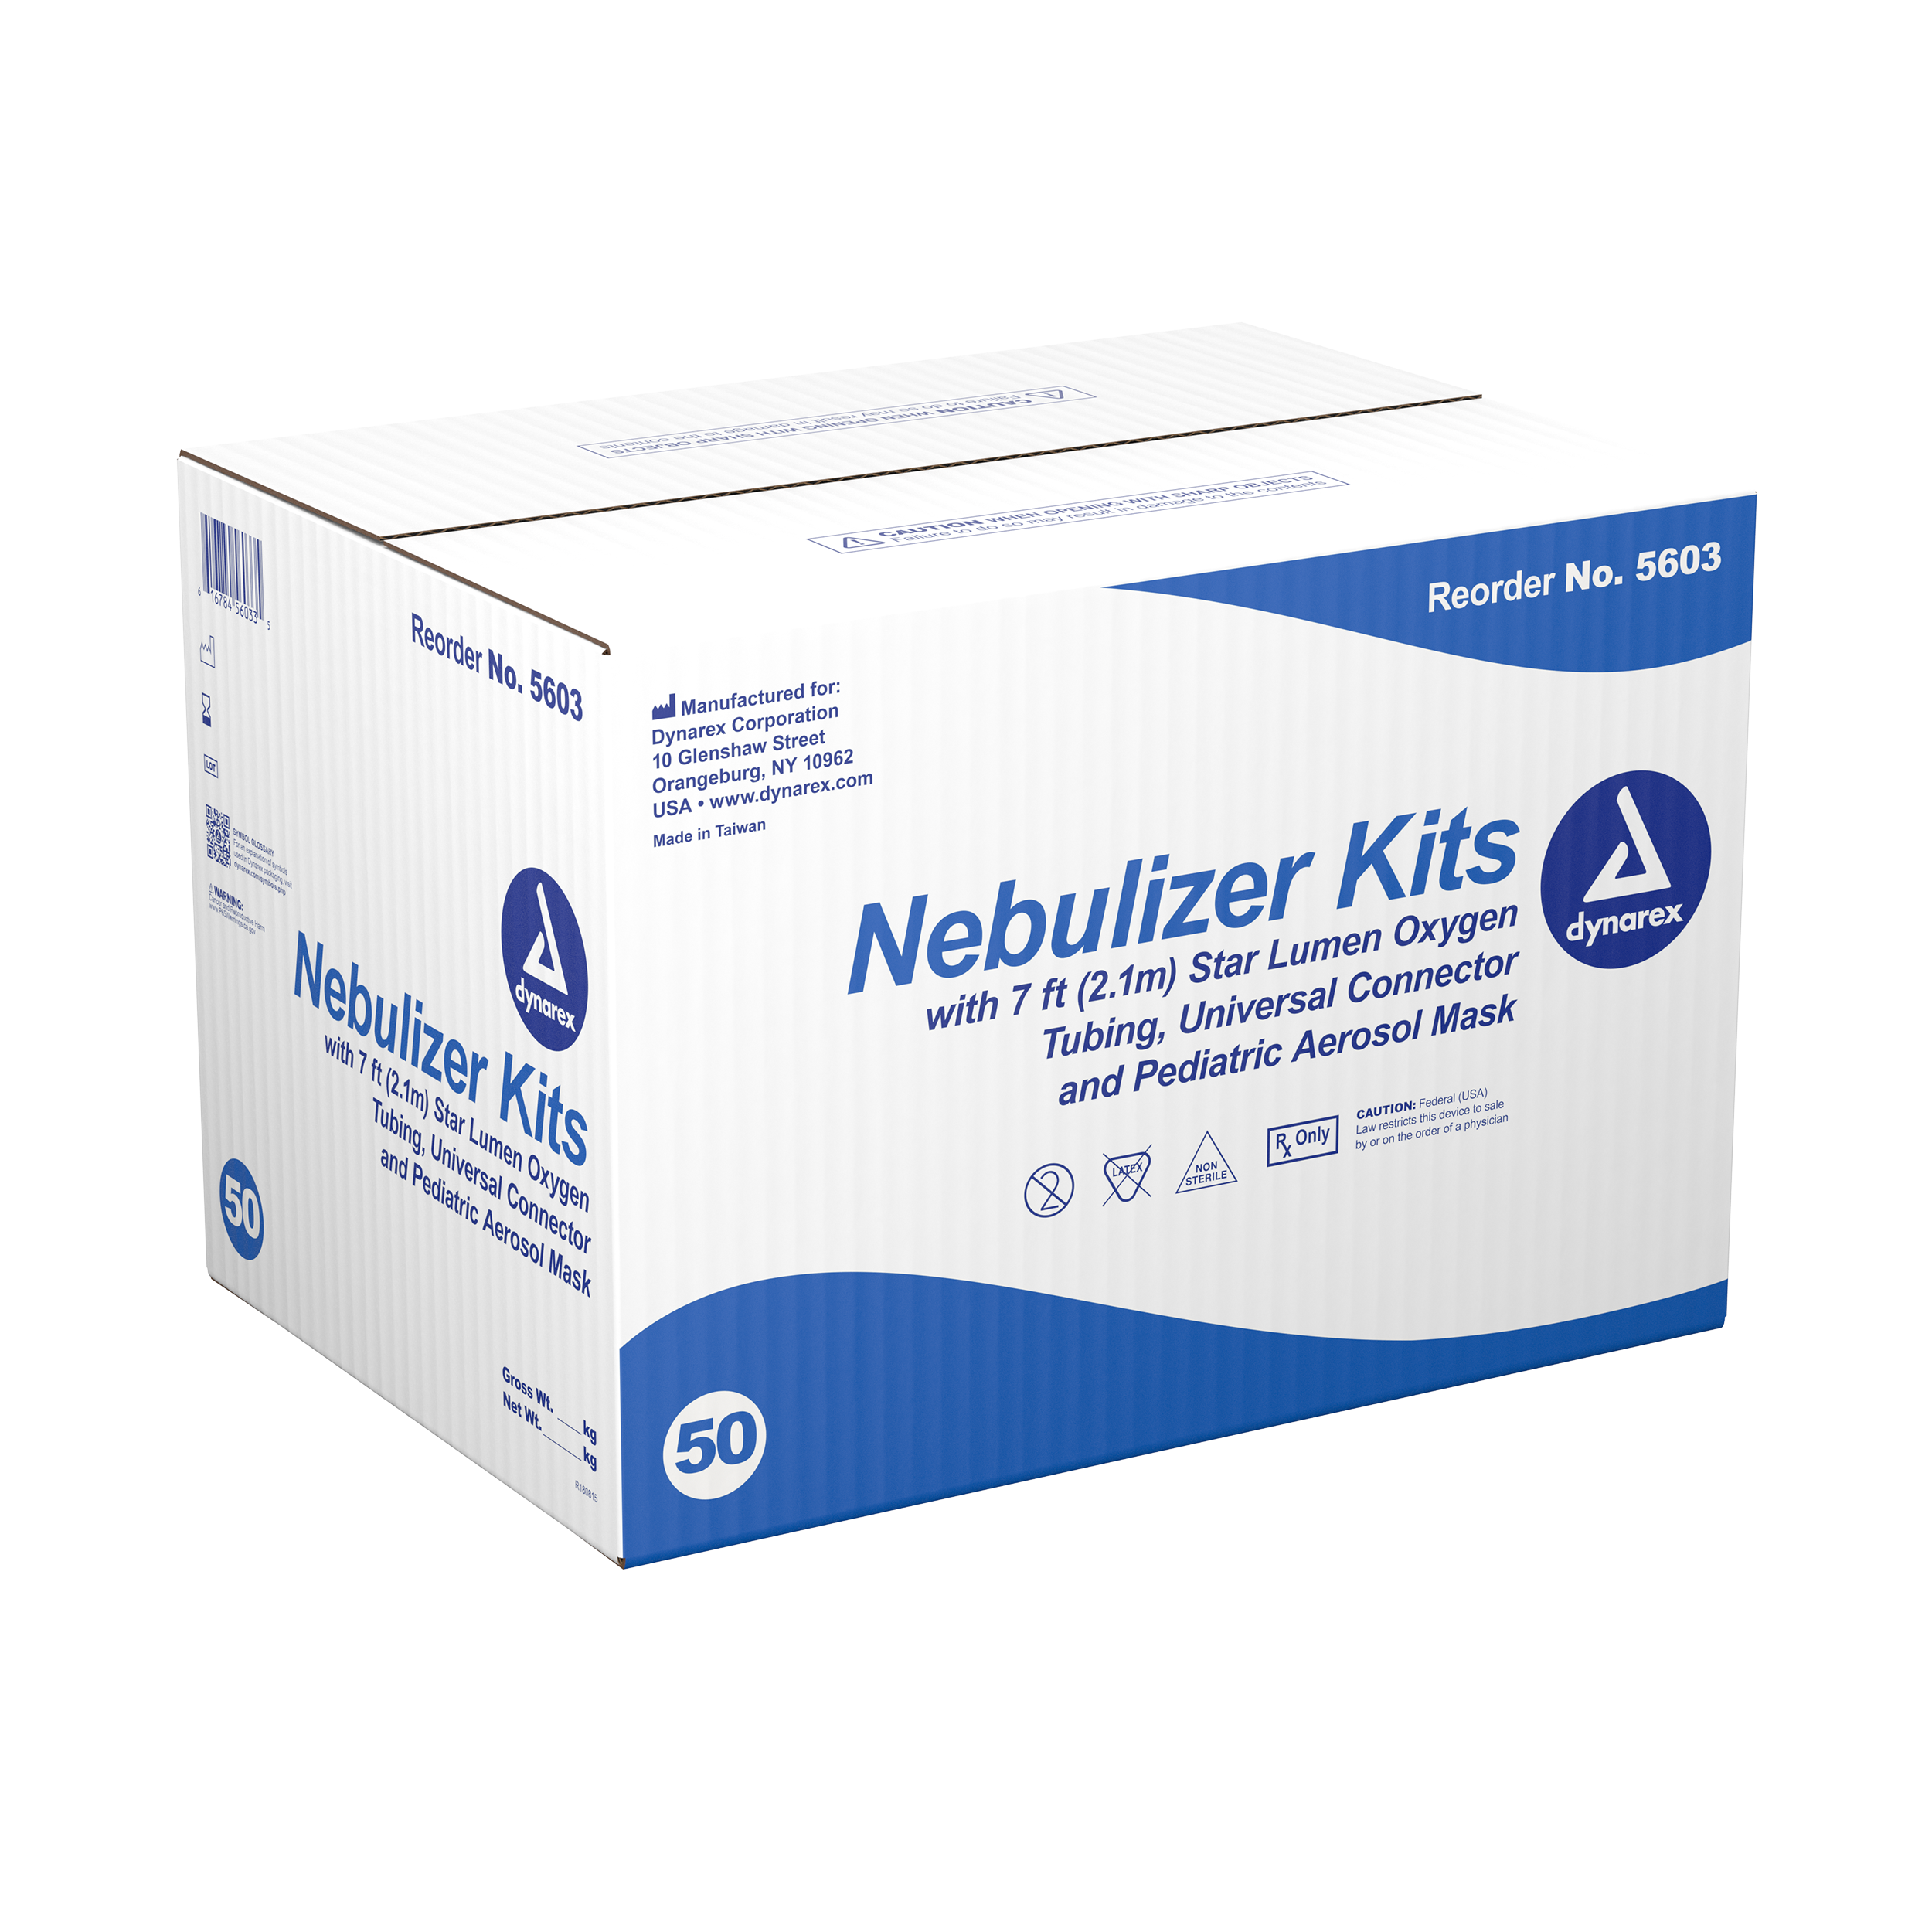 Nebulizer Kit With Pediatric Aerosol Mask - 7ft Oxygen Tubing - 50 Units